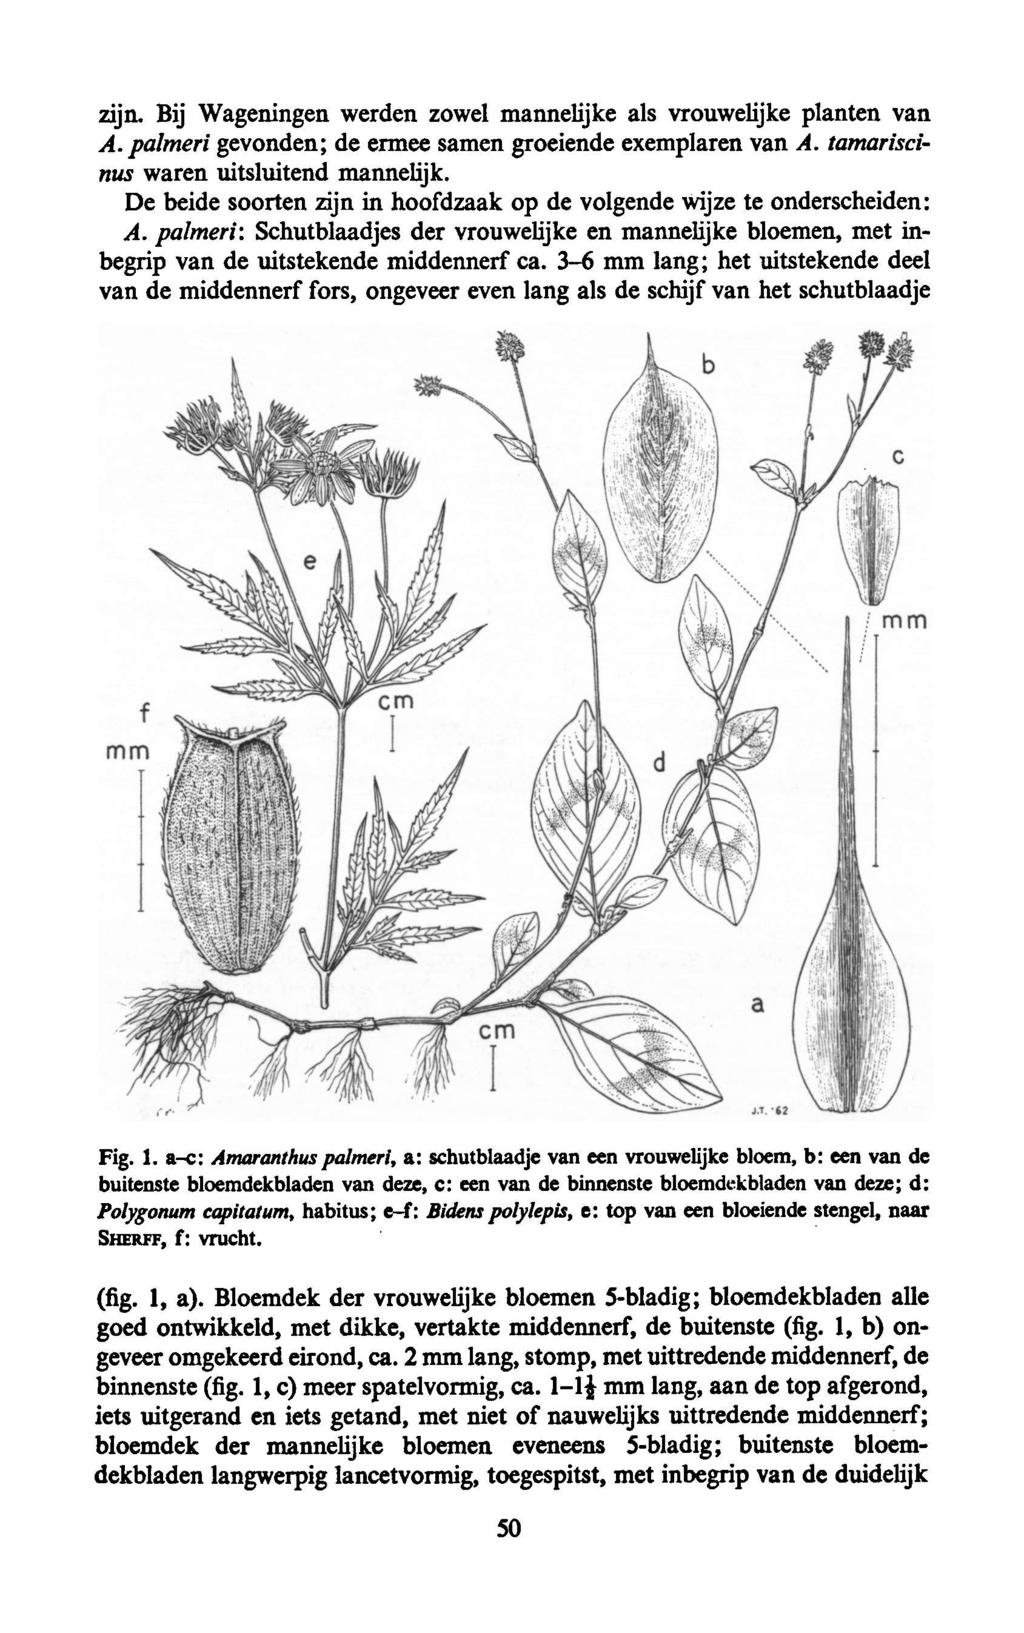 zijn. Bij Wageningen werden zowel mannelijke als vrouwelijke planten van A. palmeri gevonden; de ermee samen groeiende exemplaren van A. tamariscinus waren uitsluitend mannelijk.